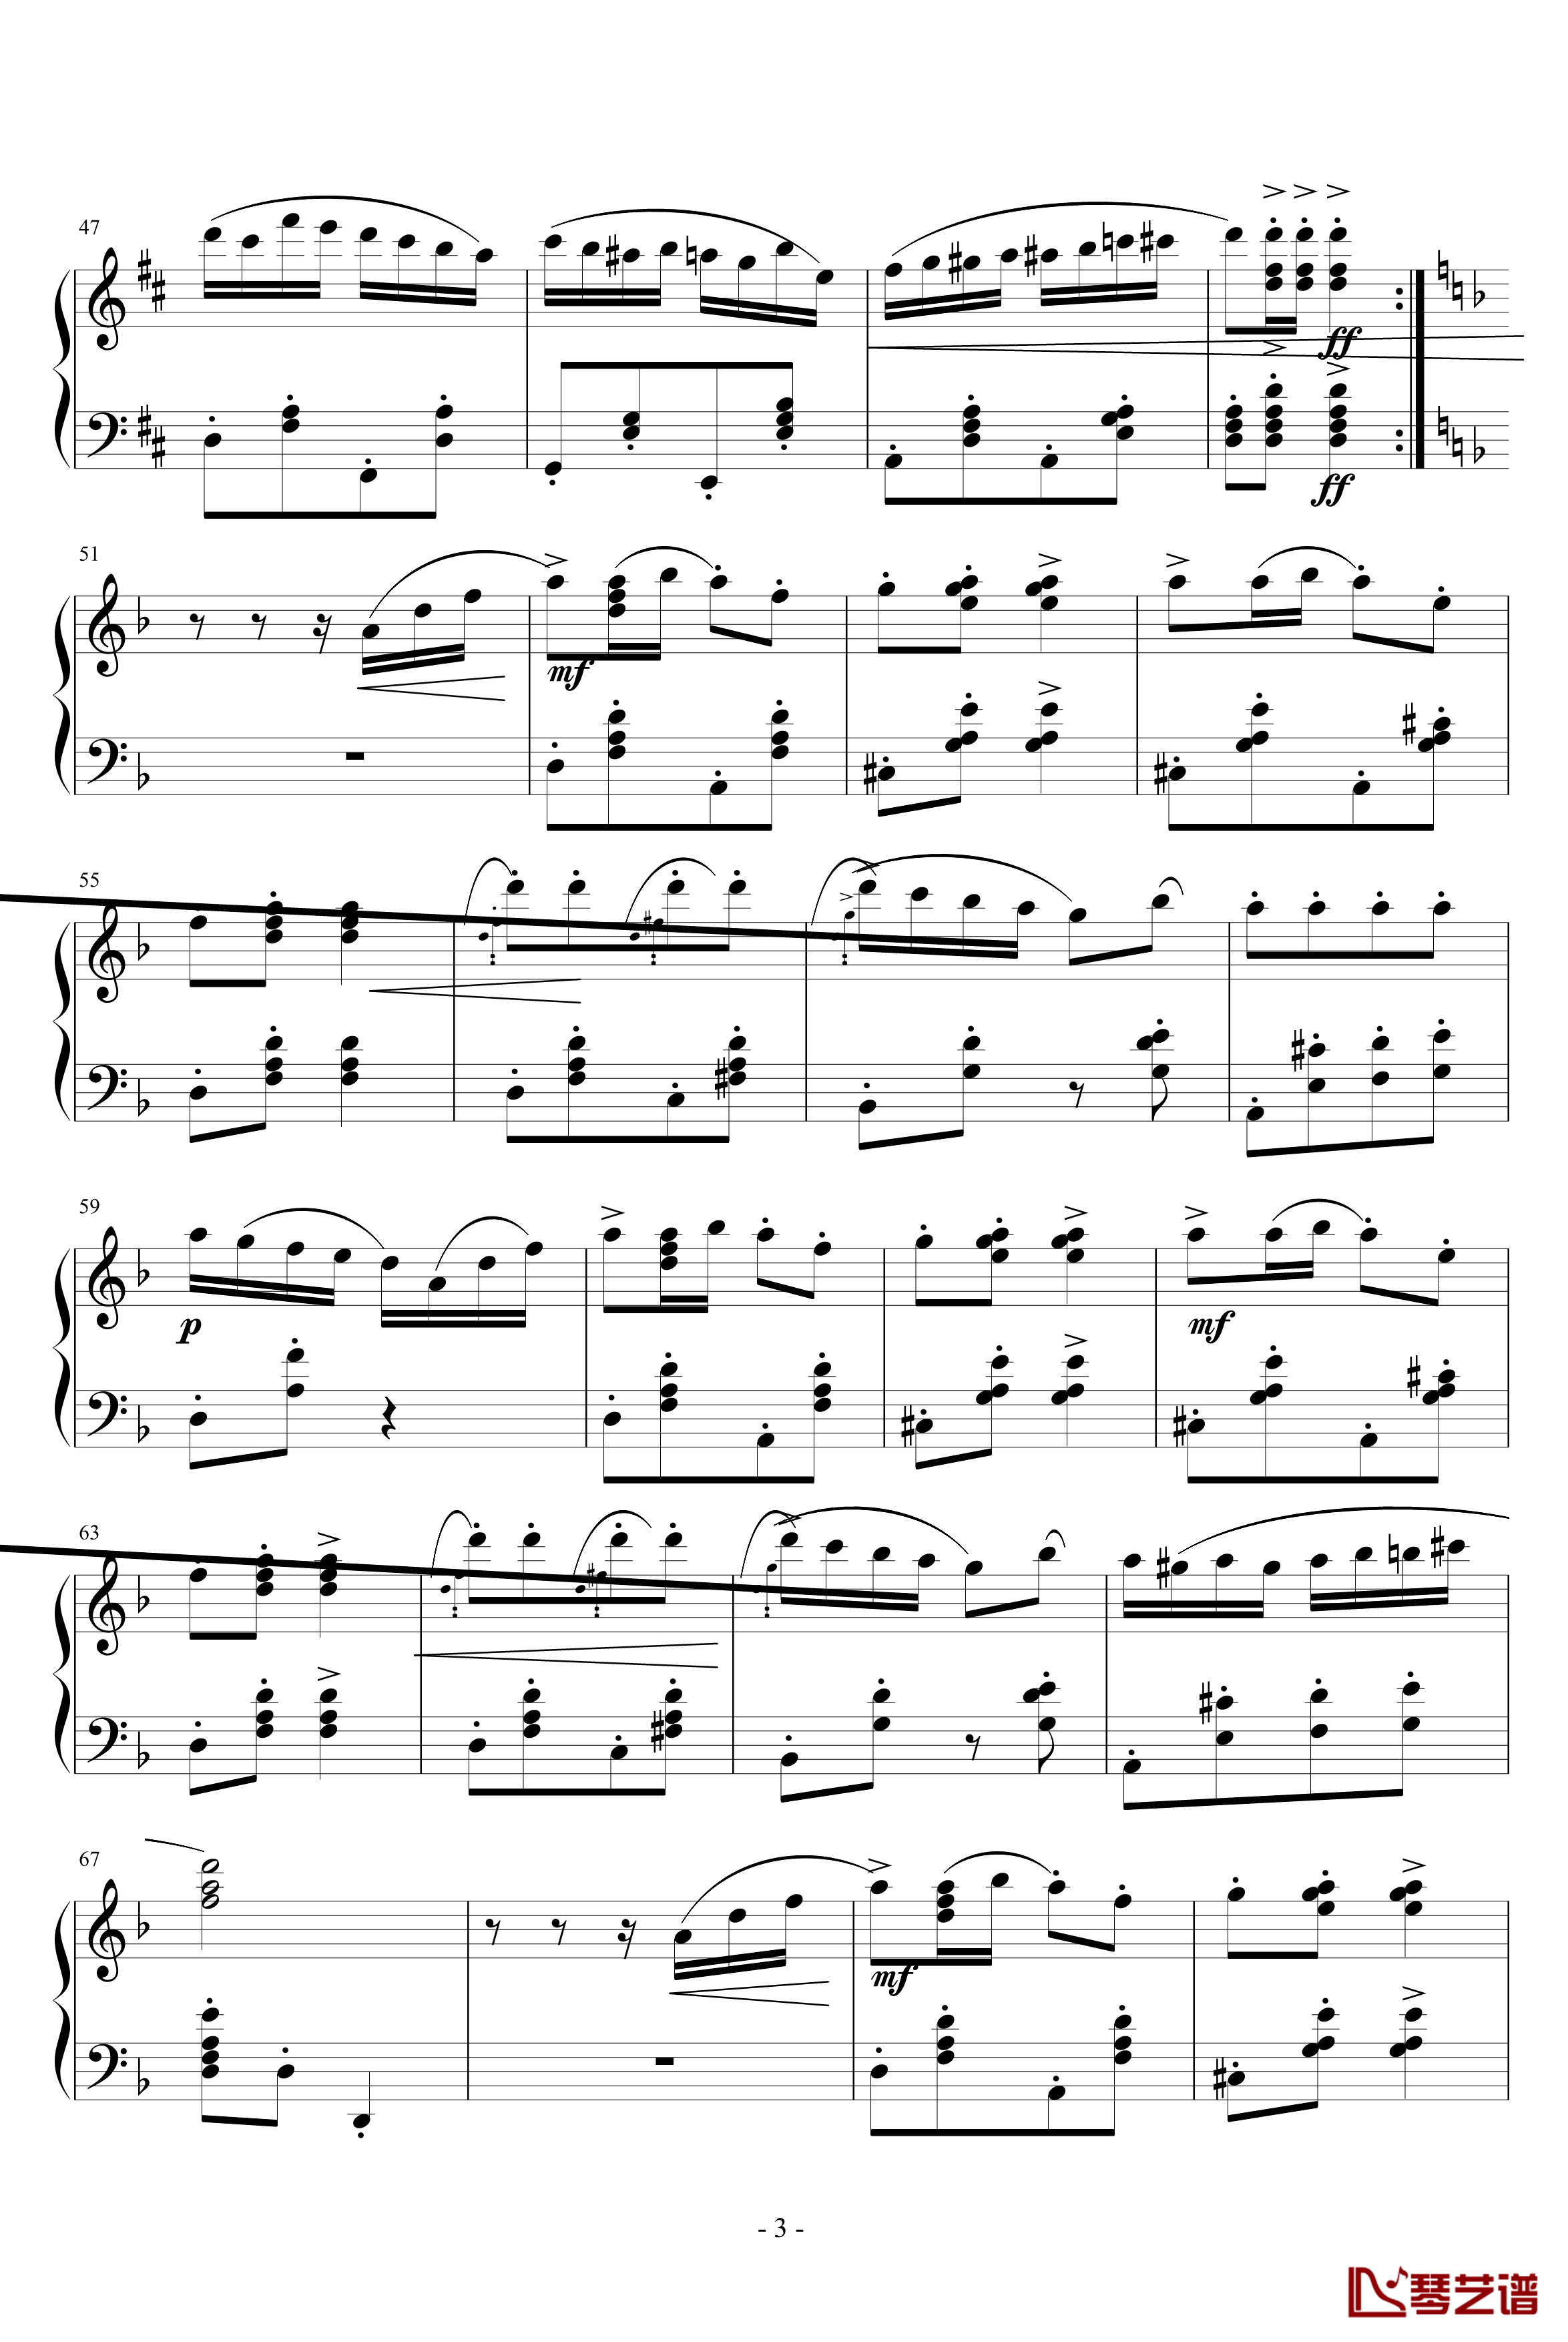 意大利波尔卡钢琴谱-拉赫马尼若夫3